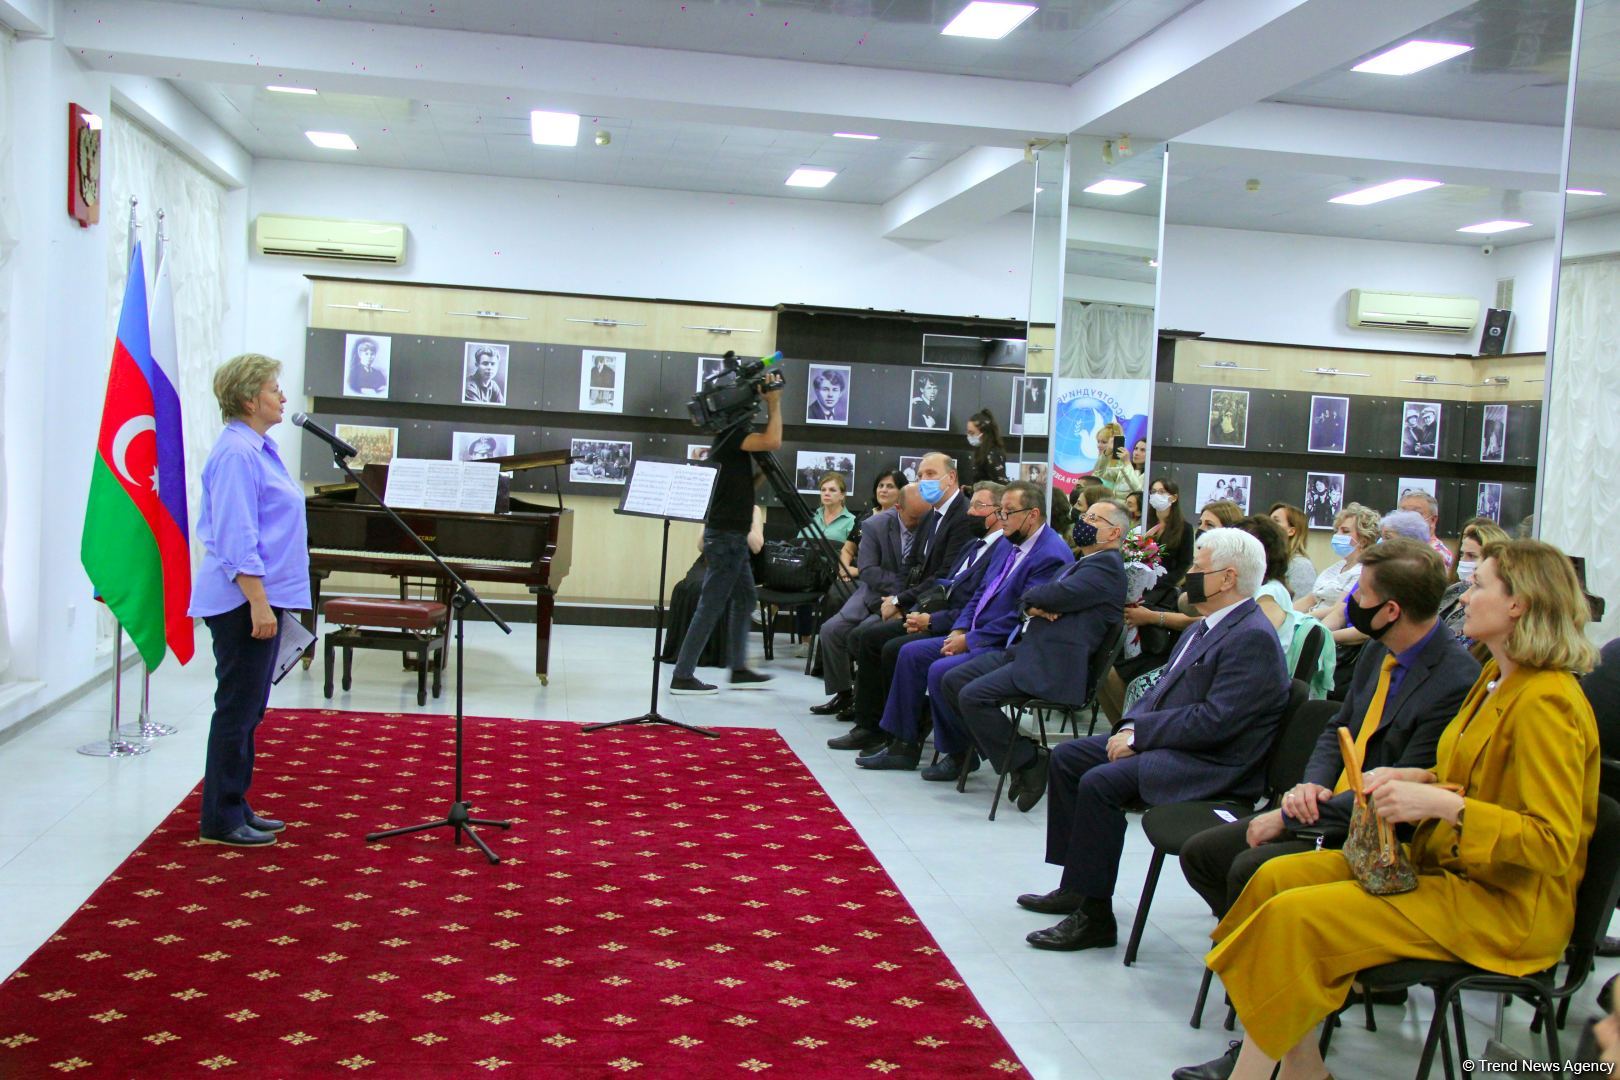 В Баку отметили Международный день музыки (ВИДЕО, ФОТО)